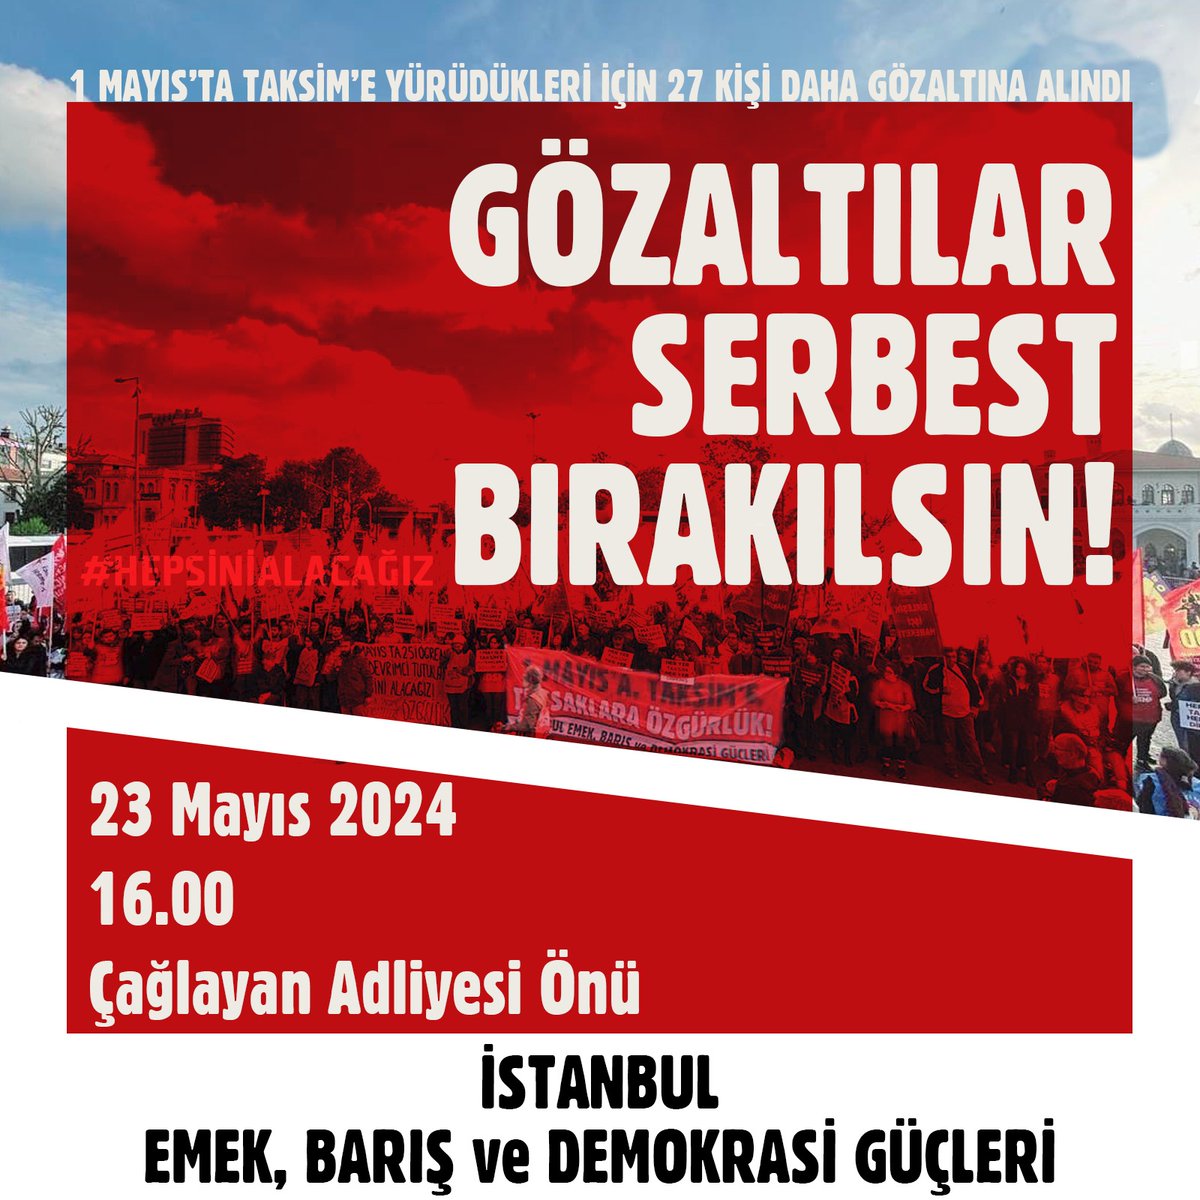 1 Mayıs’ta Taksim'e yürümek istedikleri için 27 arkadaşımız daha gözaltına alındı. Hepimiz oradaydık! Taksim iradesinin sesiyle, milyonların eşitlik, özgürlük, insanca yaşam talebiyle herkesi yarın Çağlayan Adliyesi'ne çağırıyoruz. Taksim'i de arkadaşlarımızı da geri alacağız!